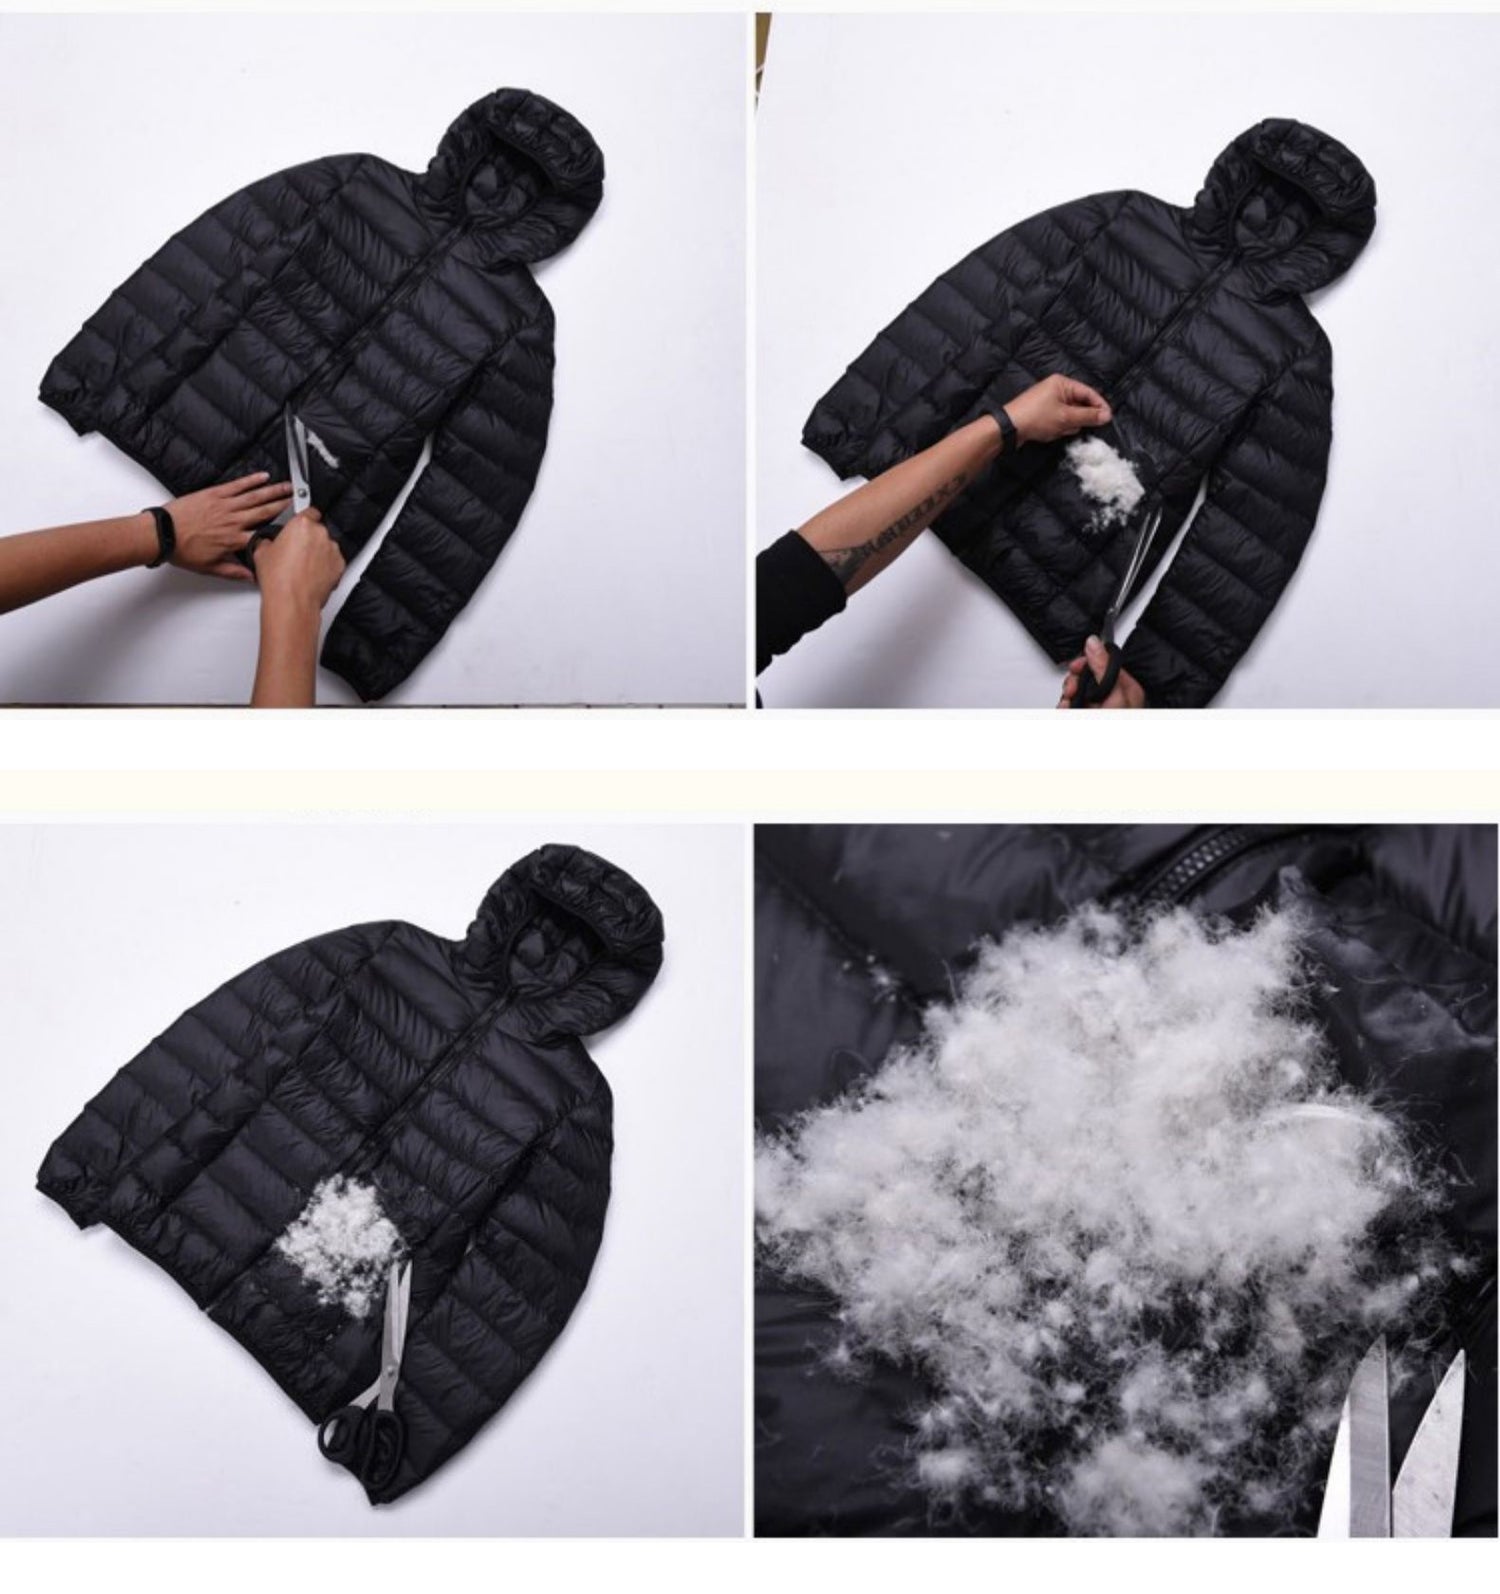 Fine cotton jacket - dealod